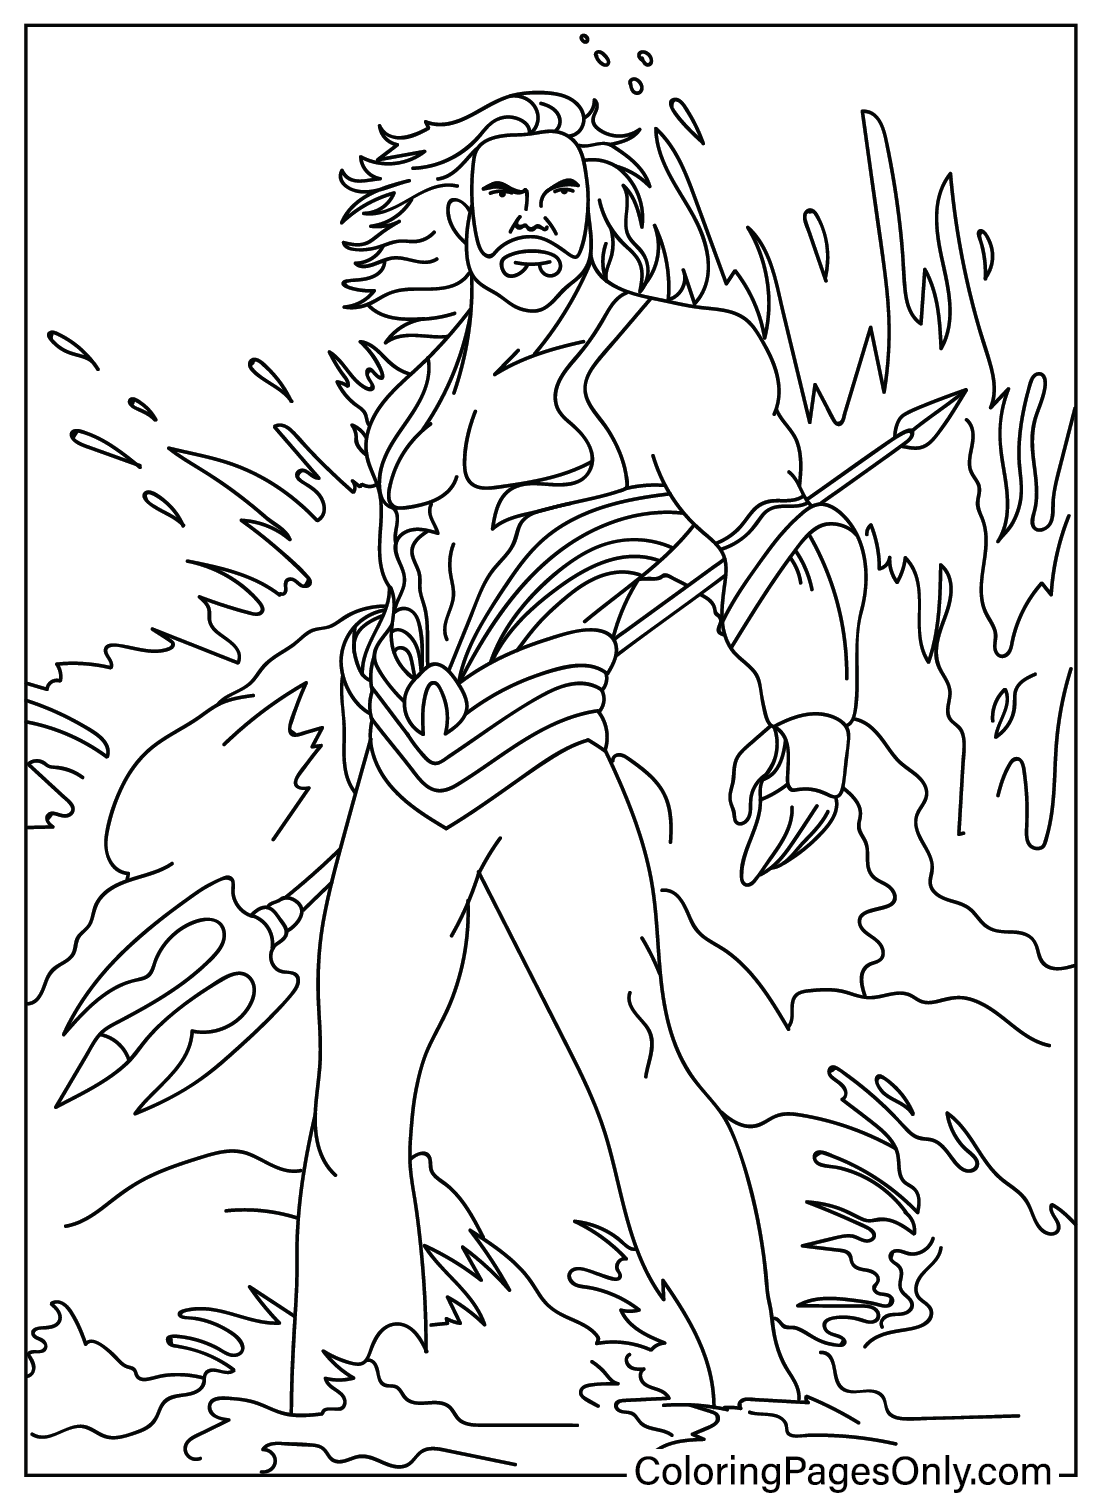 Aquaman Coloring Page from Aquaman